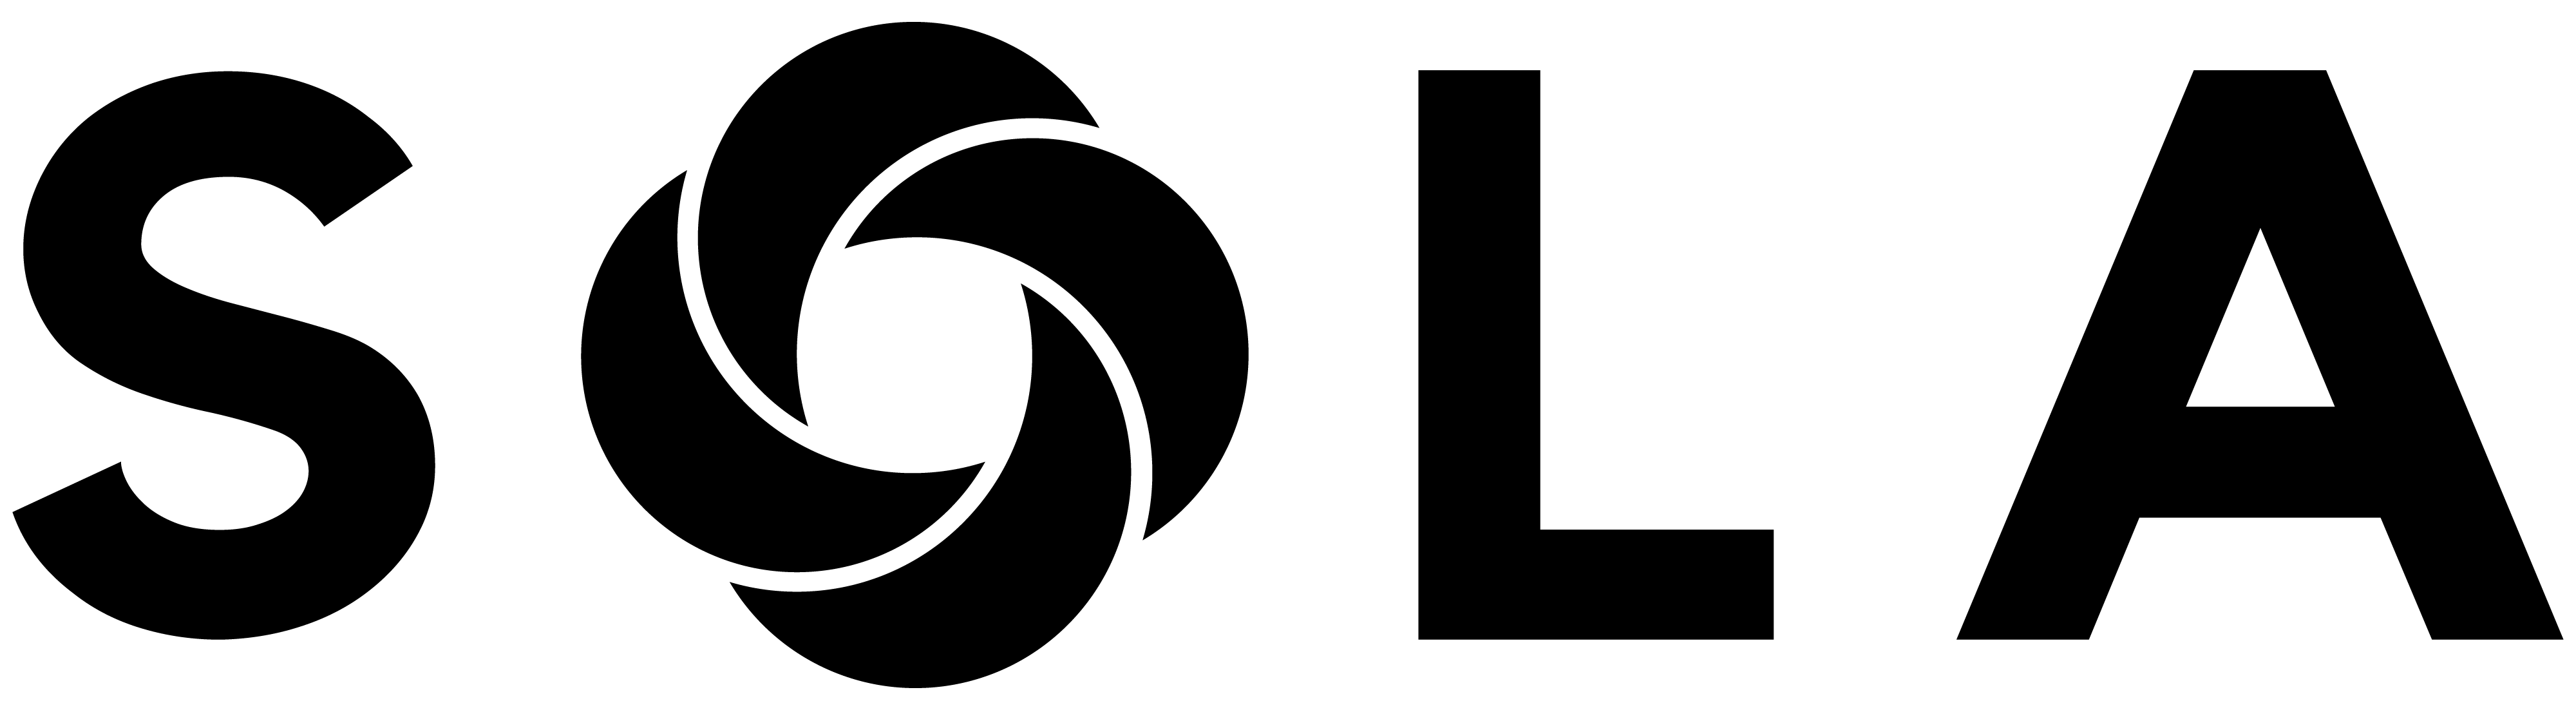 Sola - logo Full black